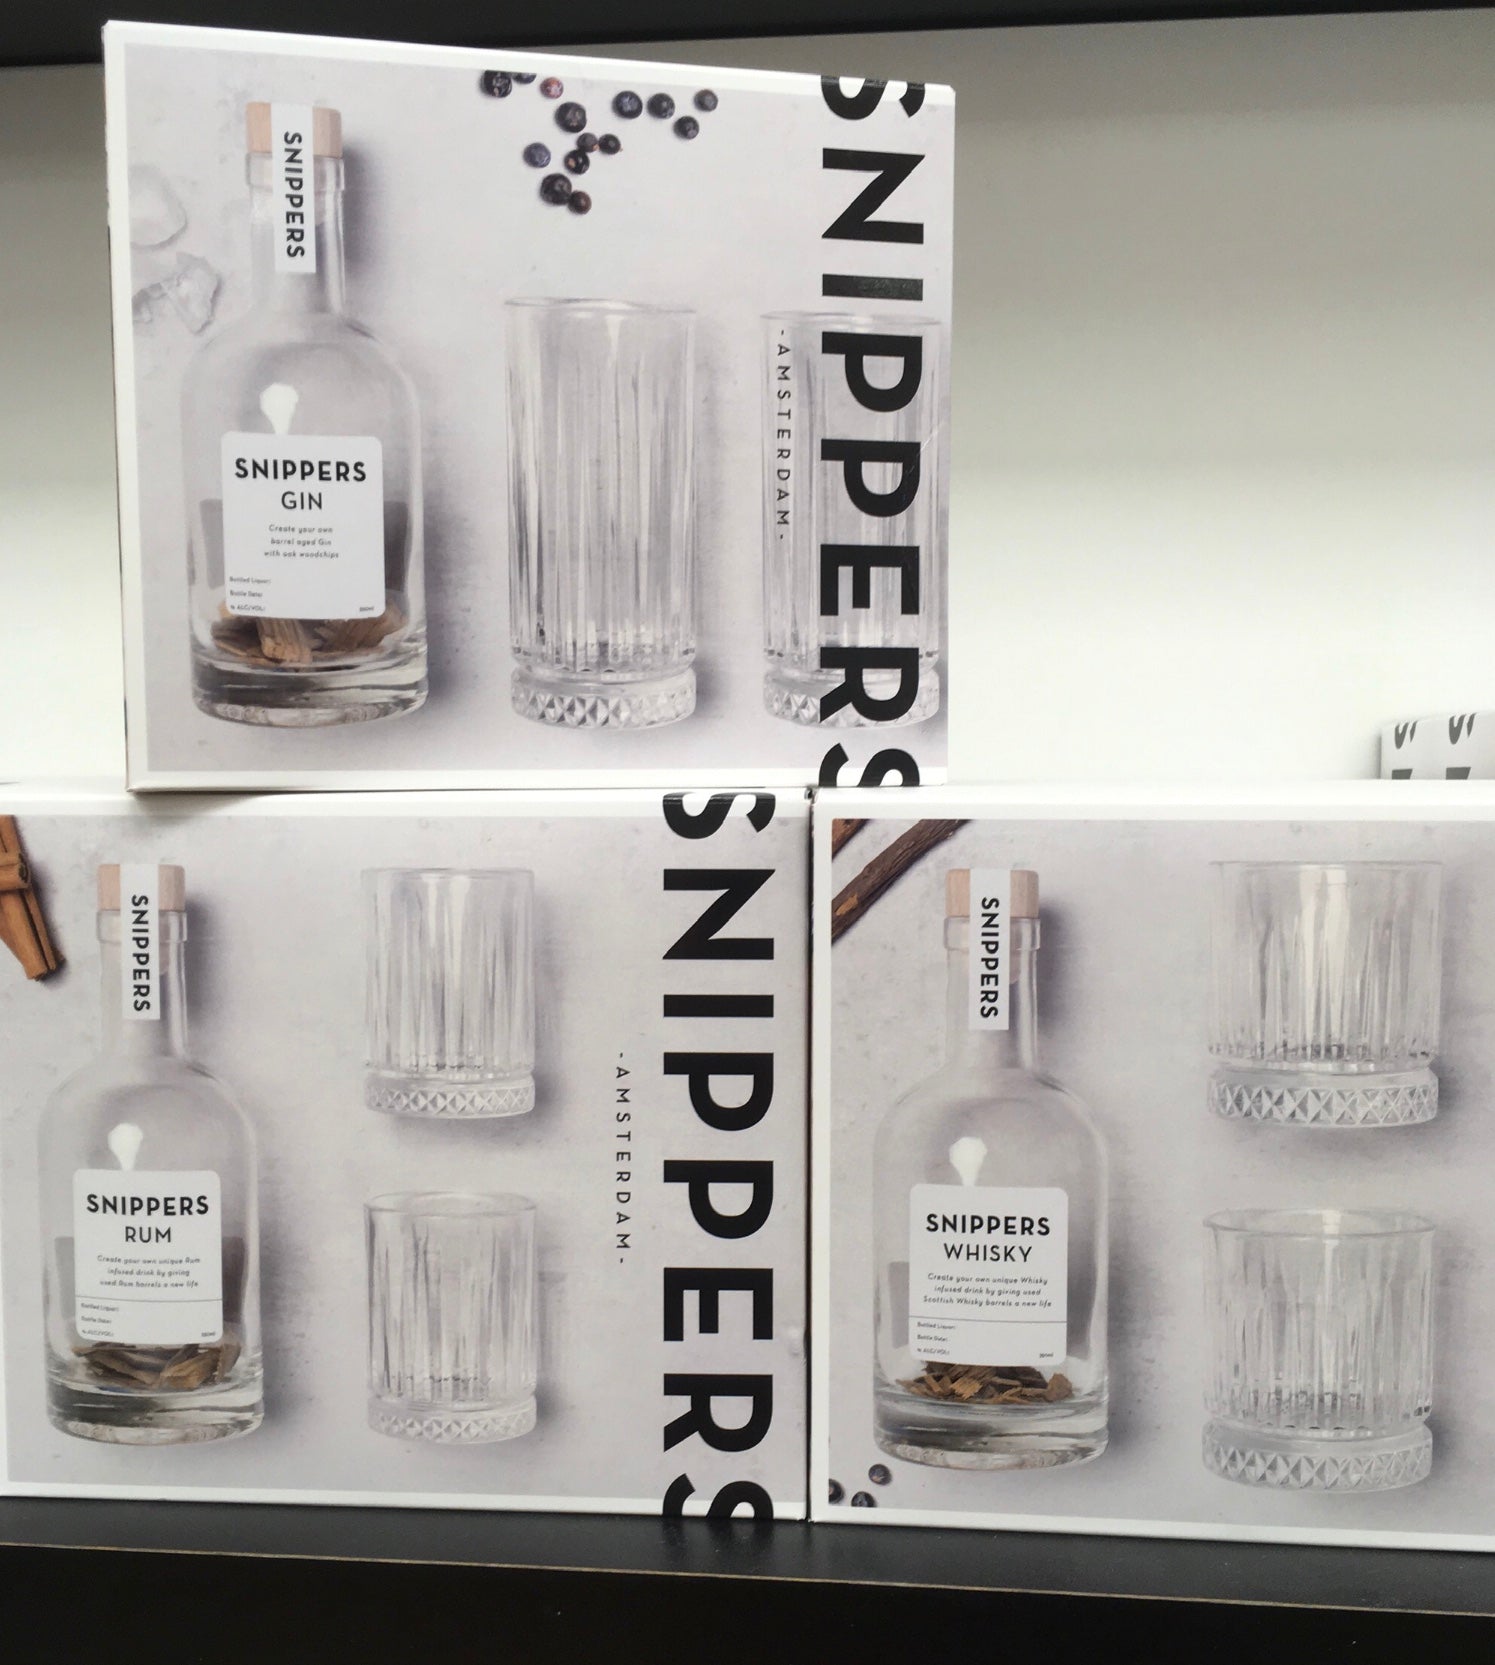 Snippers Geschenkpakket Whisky